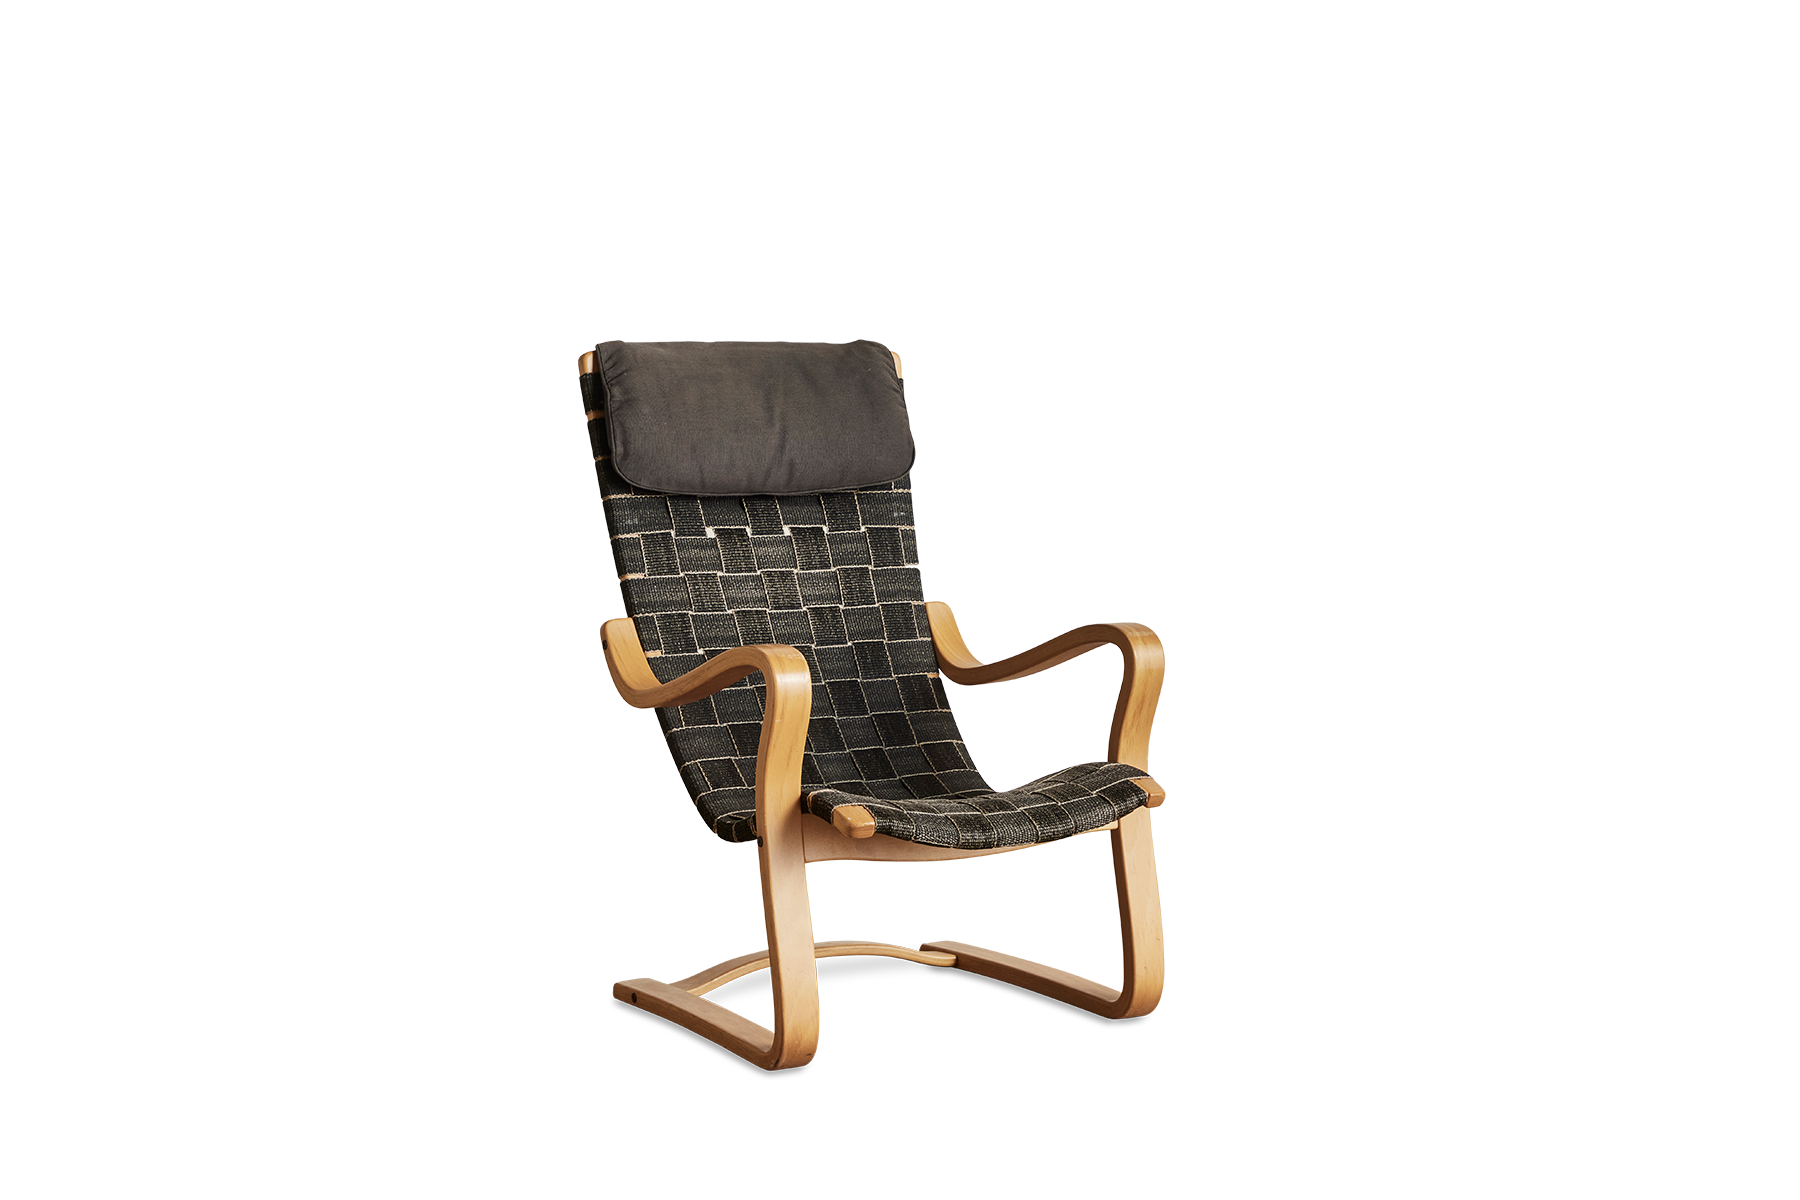 Alvaro Aalto Style Chairs